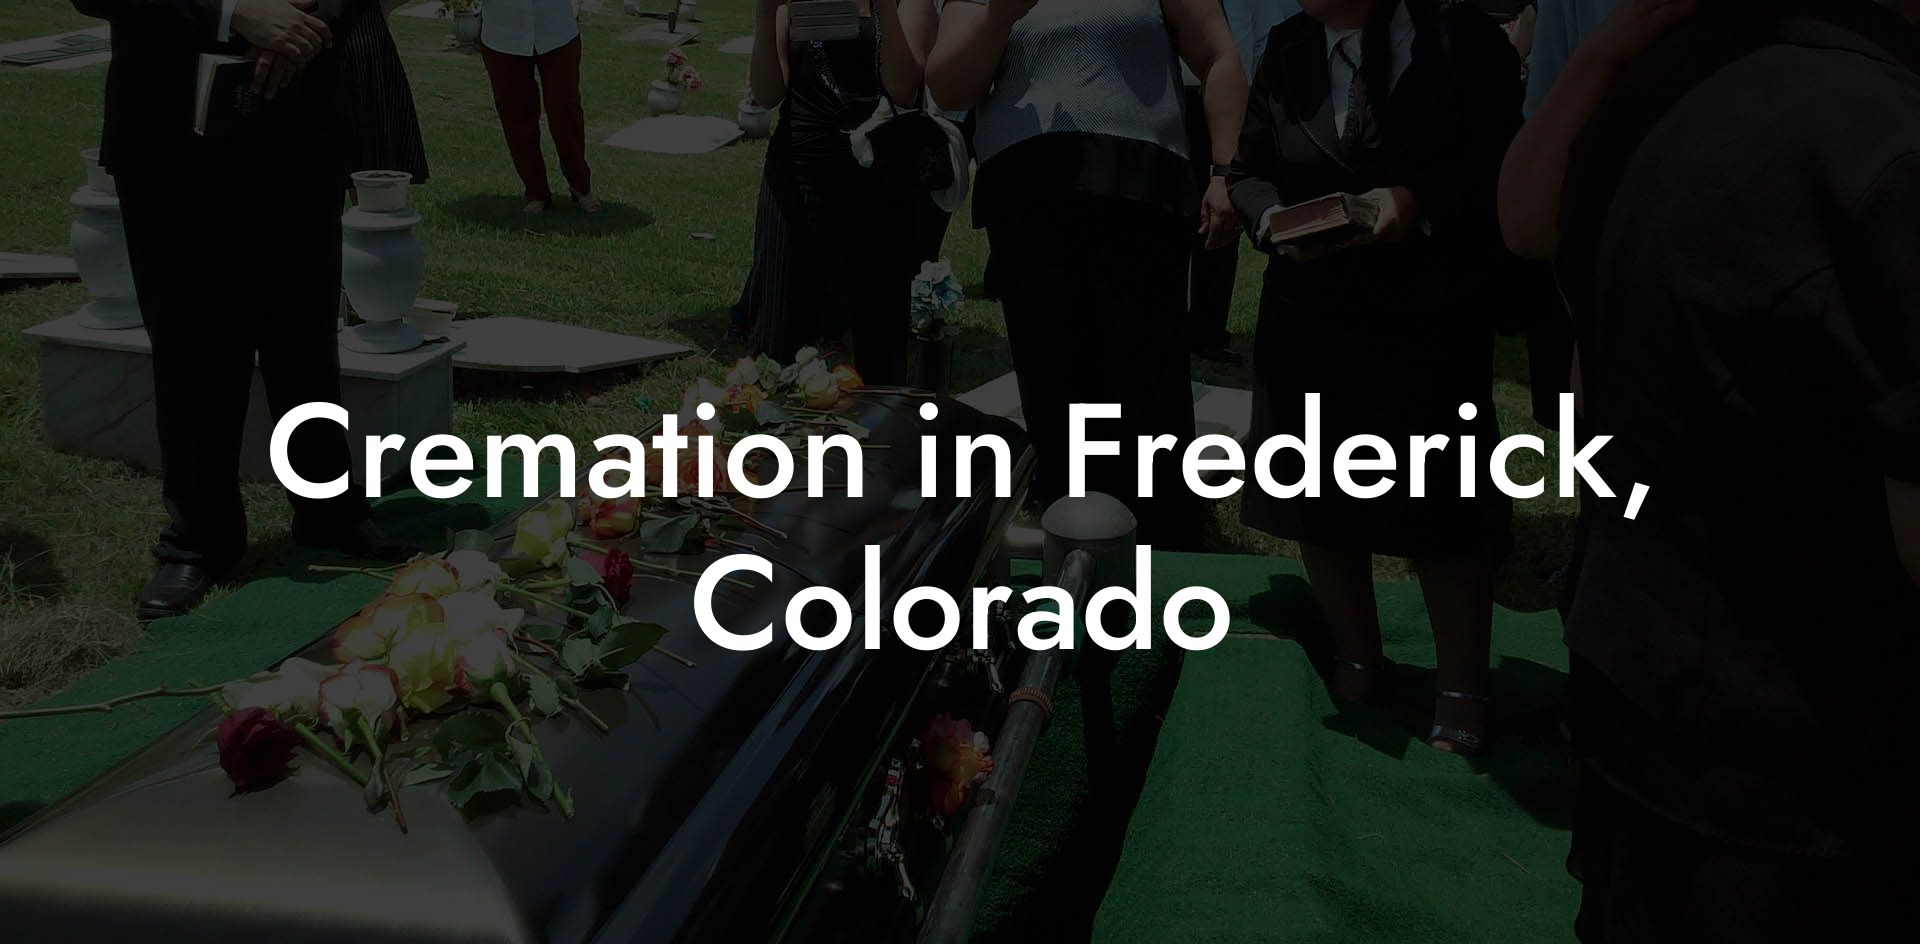 Cremation in Frederick, Colorado